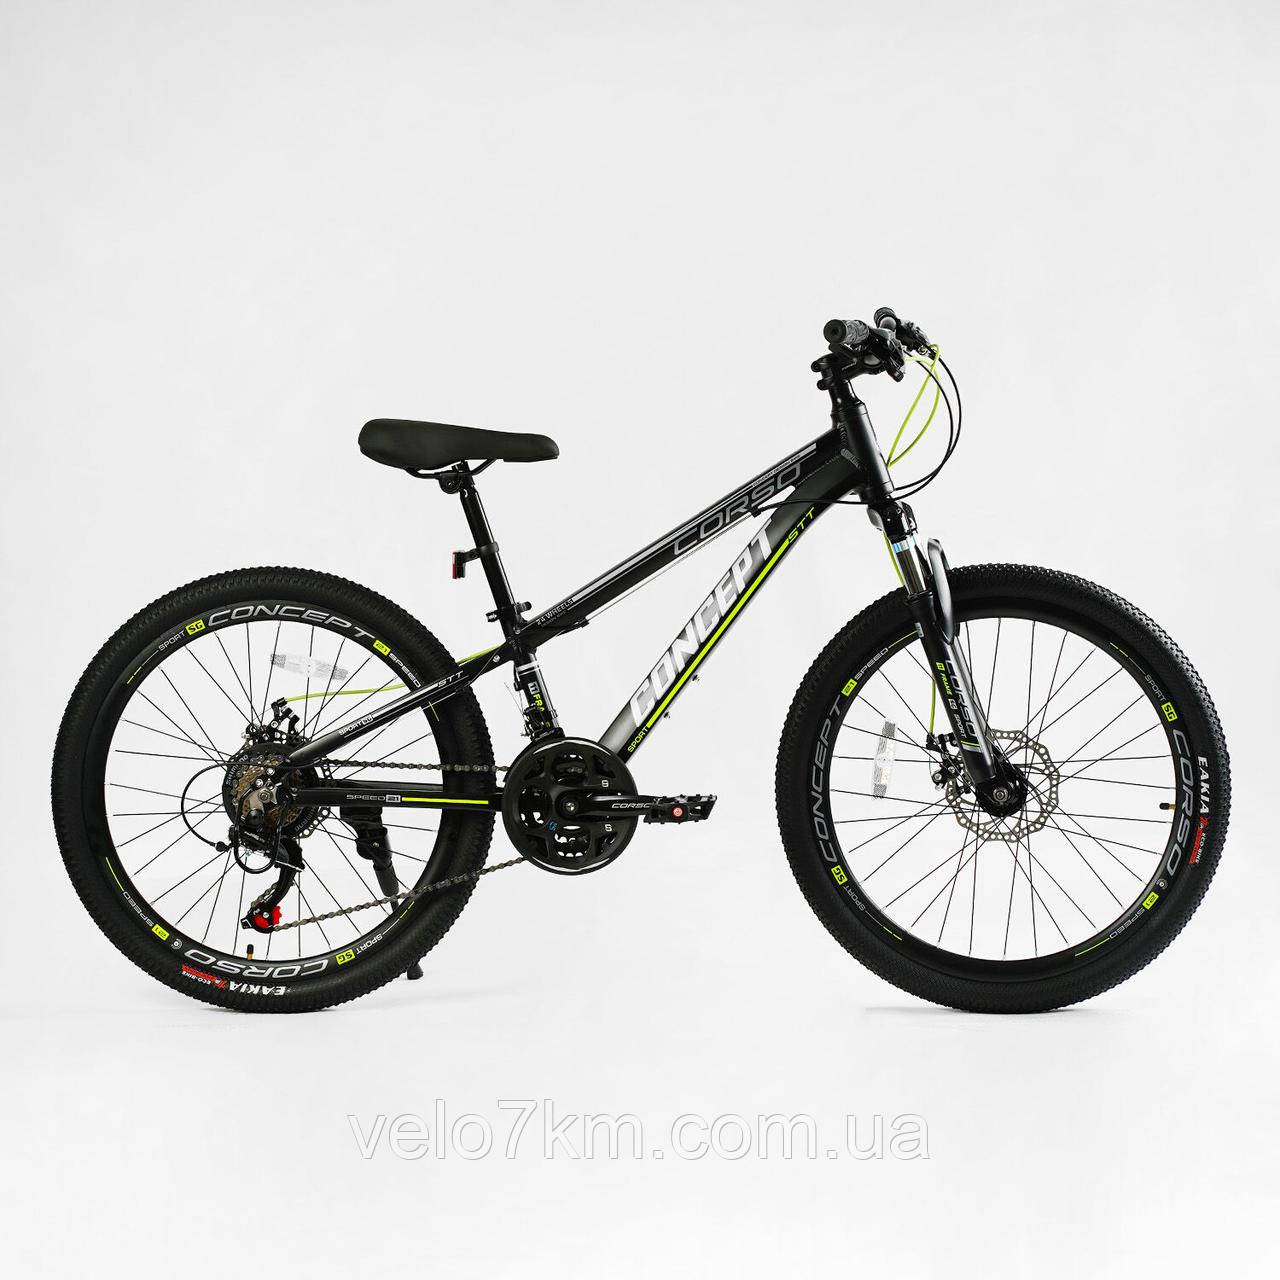 Підлітковий велосипед Corso Concept 24" рама 11" алюмінієвий, Shimano 21S, зібраний на 75% у коробці